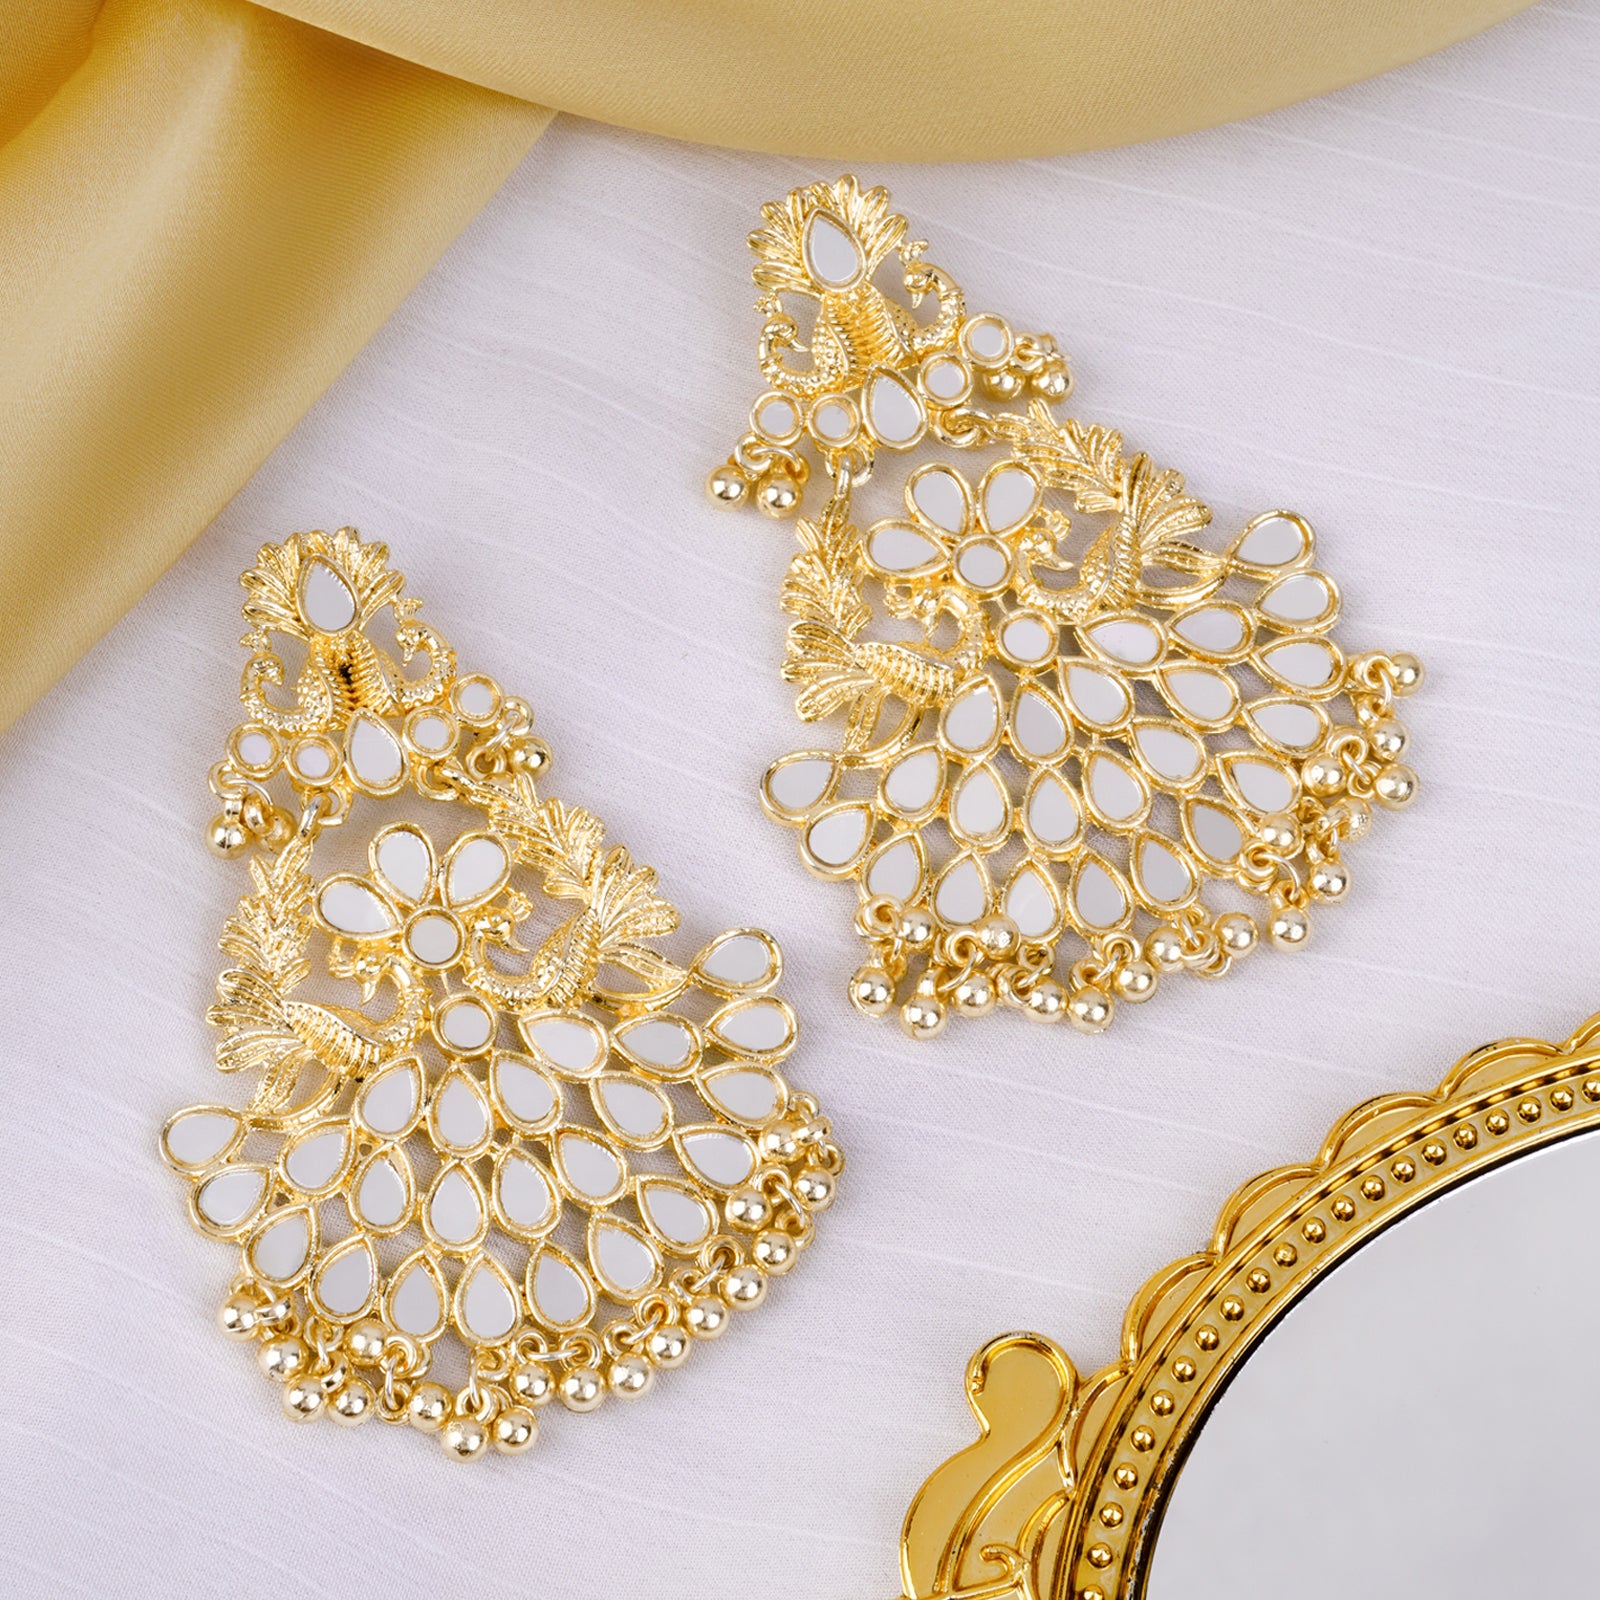 Dubai gold earrings design|Arabic design gold earrings - YouTube